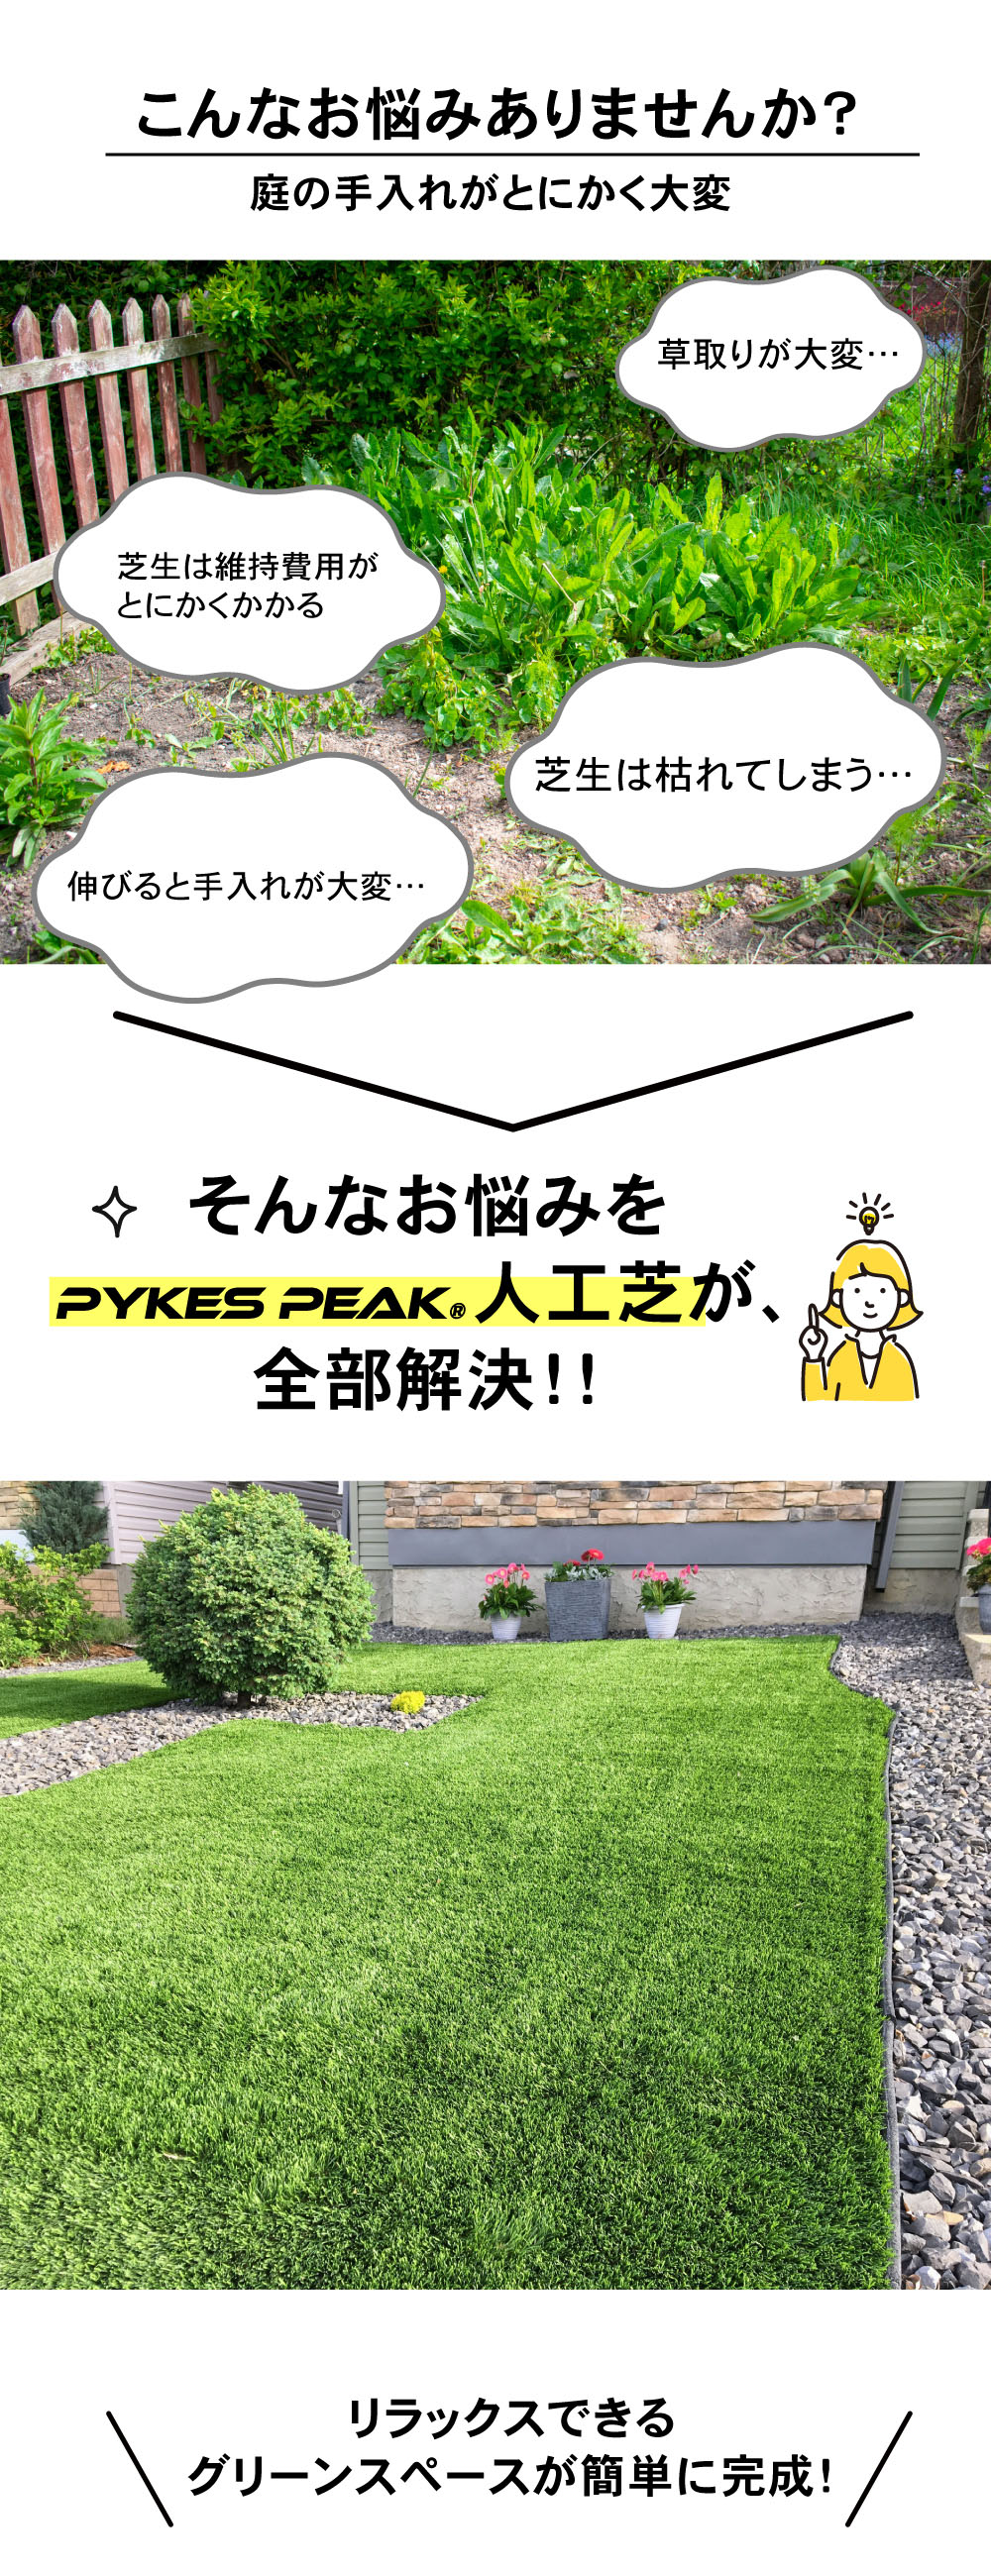 人工芝 防草タイプ リアル人工芝 オークモント1m×20m 芝丈18mm :p0126w1820:PYKES PEAK Direct 通販  